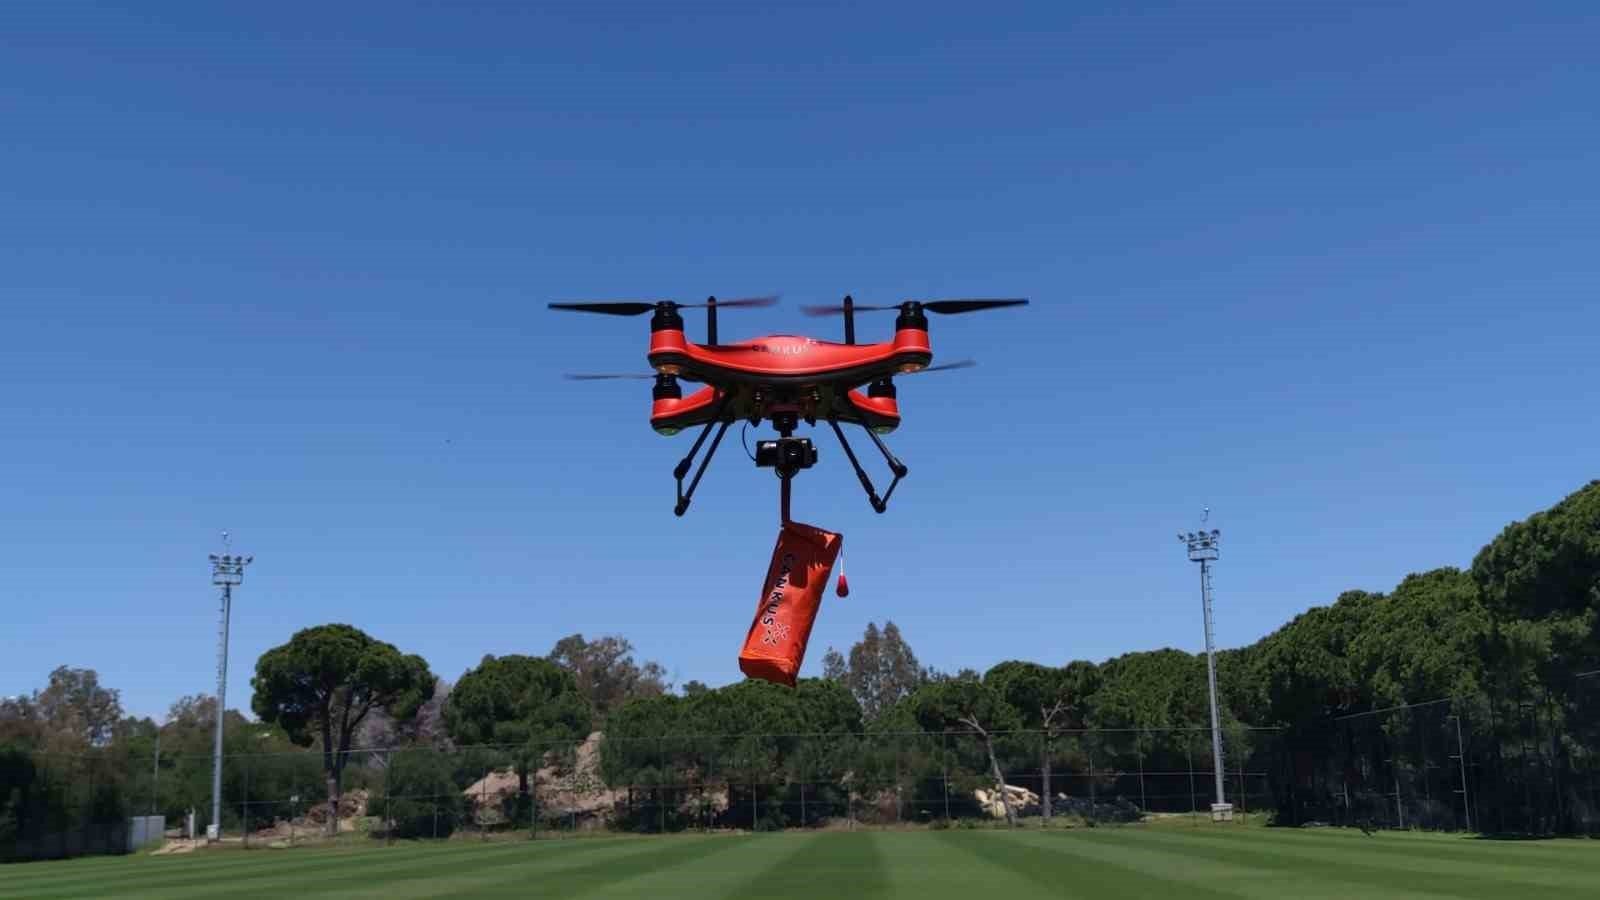 2023/05/antalyada-sahillerinde-kadin-dron-pilotlari-hayat-kurtaracak-20230501AW88-4.jpg